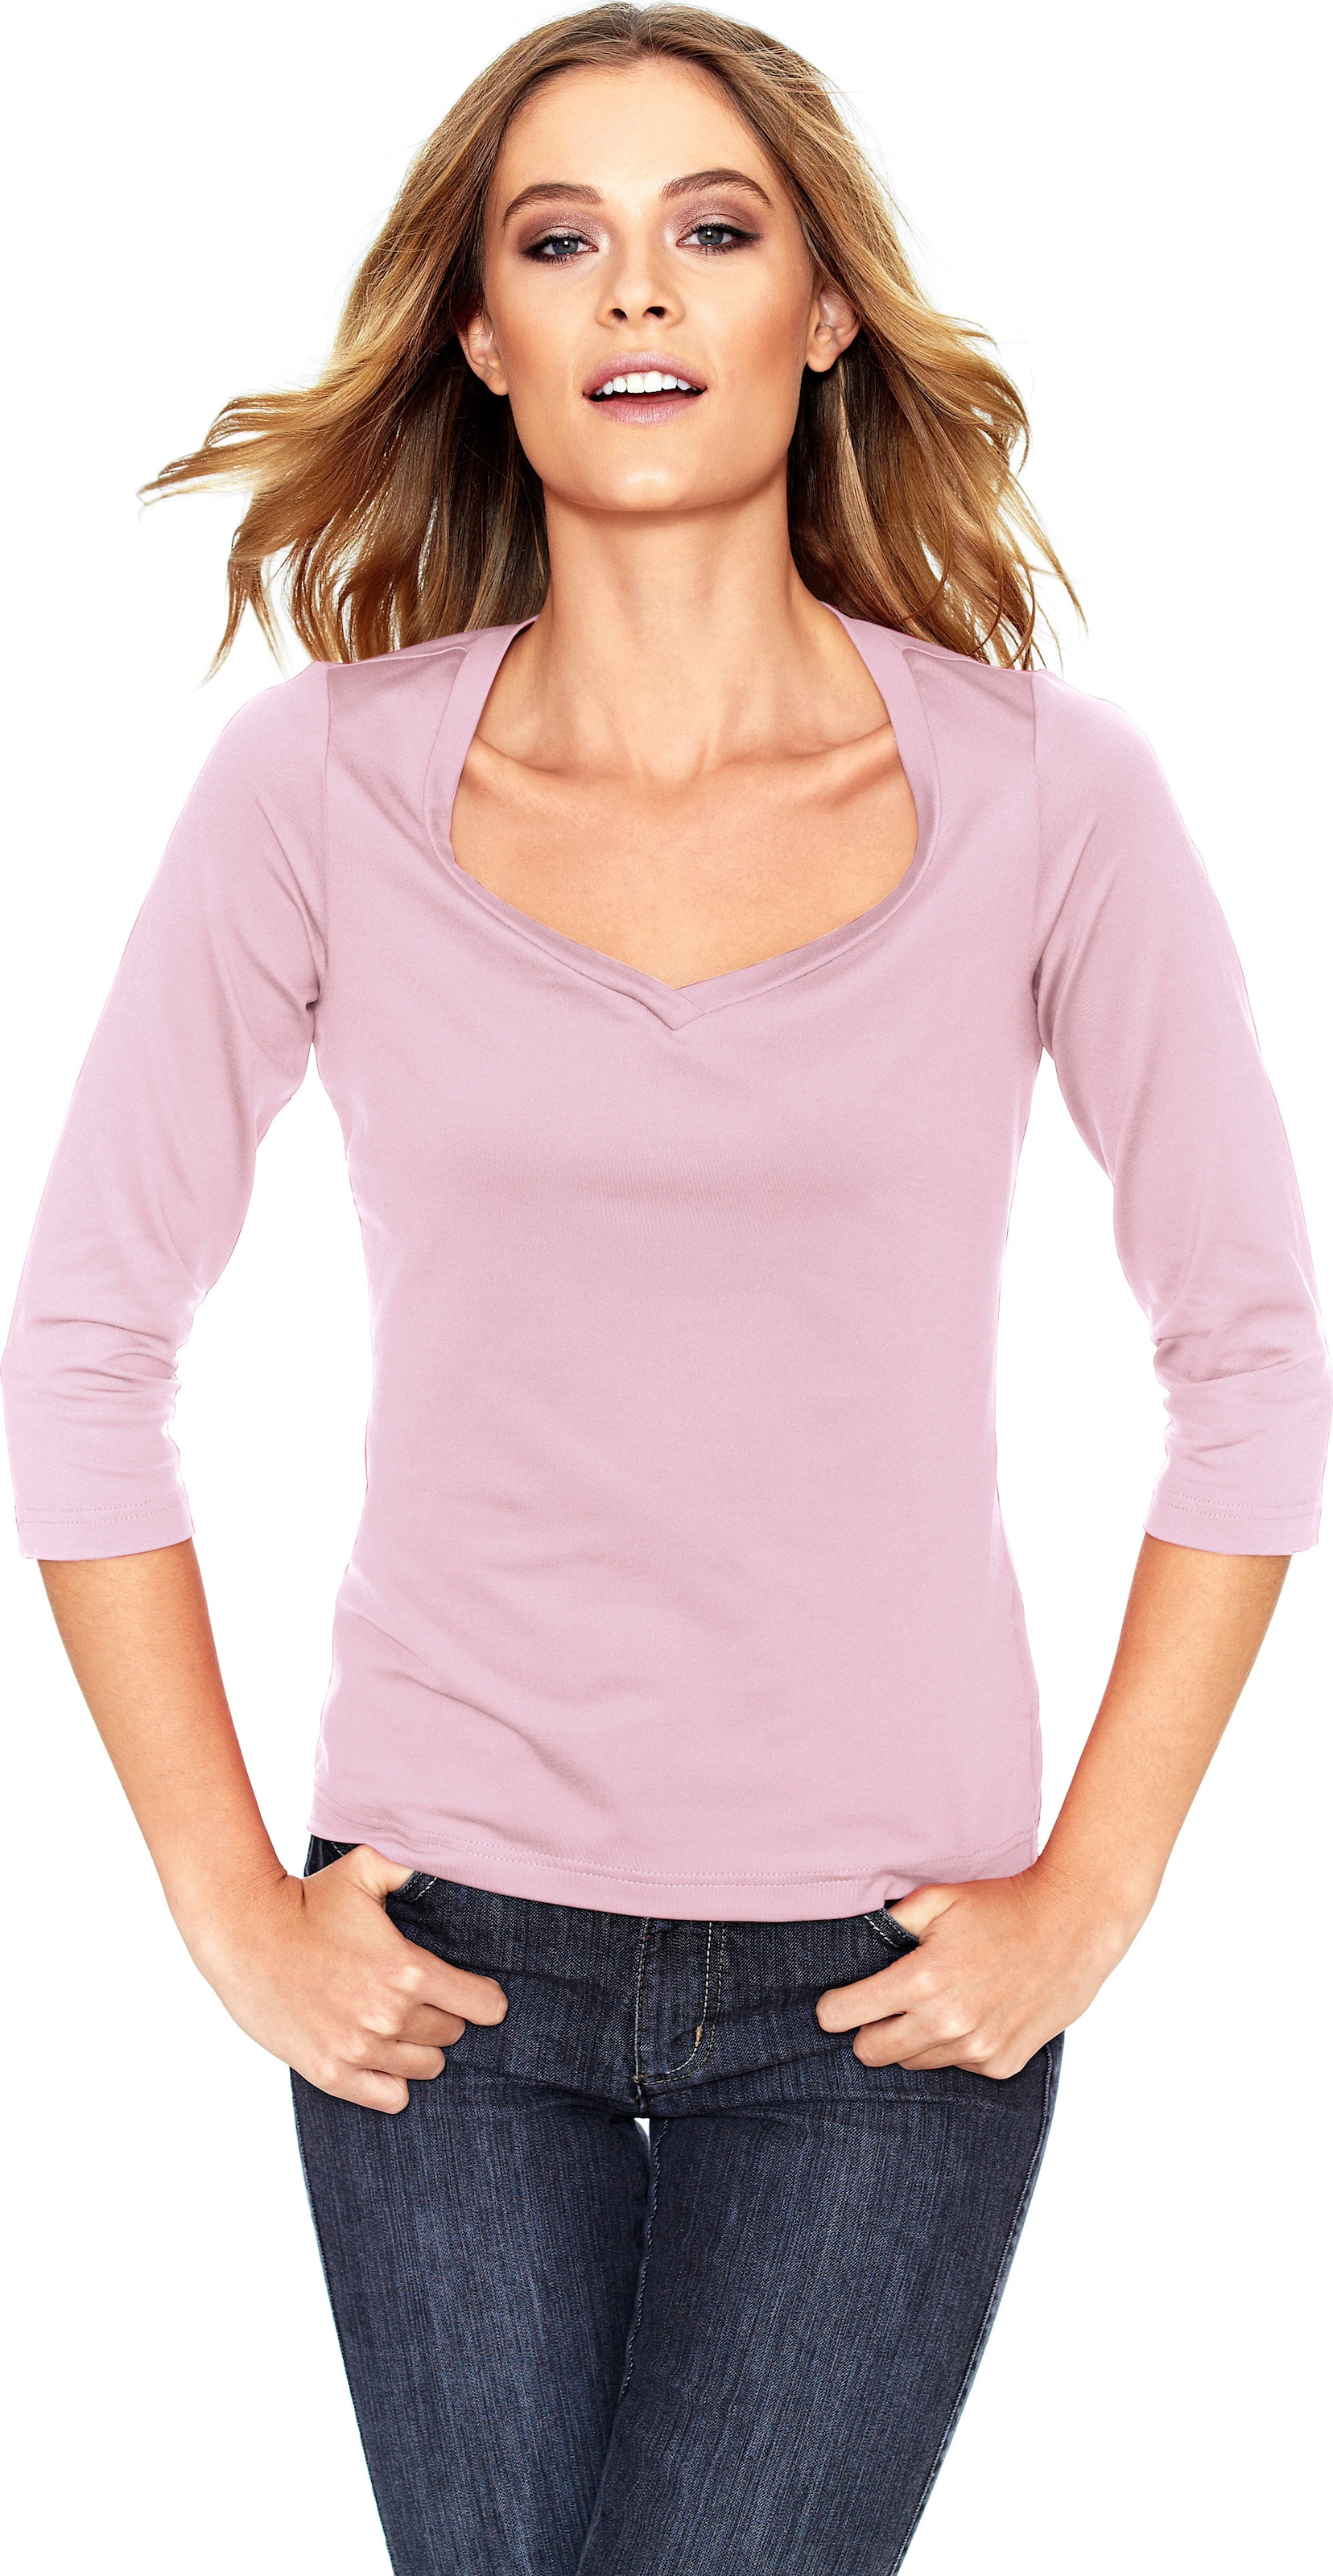 Herz aus günstig Kaufen-Shirt in rosé von heine. Shirt in rosé von heine <![CDATA[Shirt Femininer Kombi-Style aus Tactel, in angenehmer Stretch-Qualität. Mit hoher Farbbrillanz und leichtem Glanz. Figurbetont, mit Herzausschnitt und 3/4-Arm.]]>. 